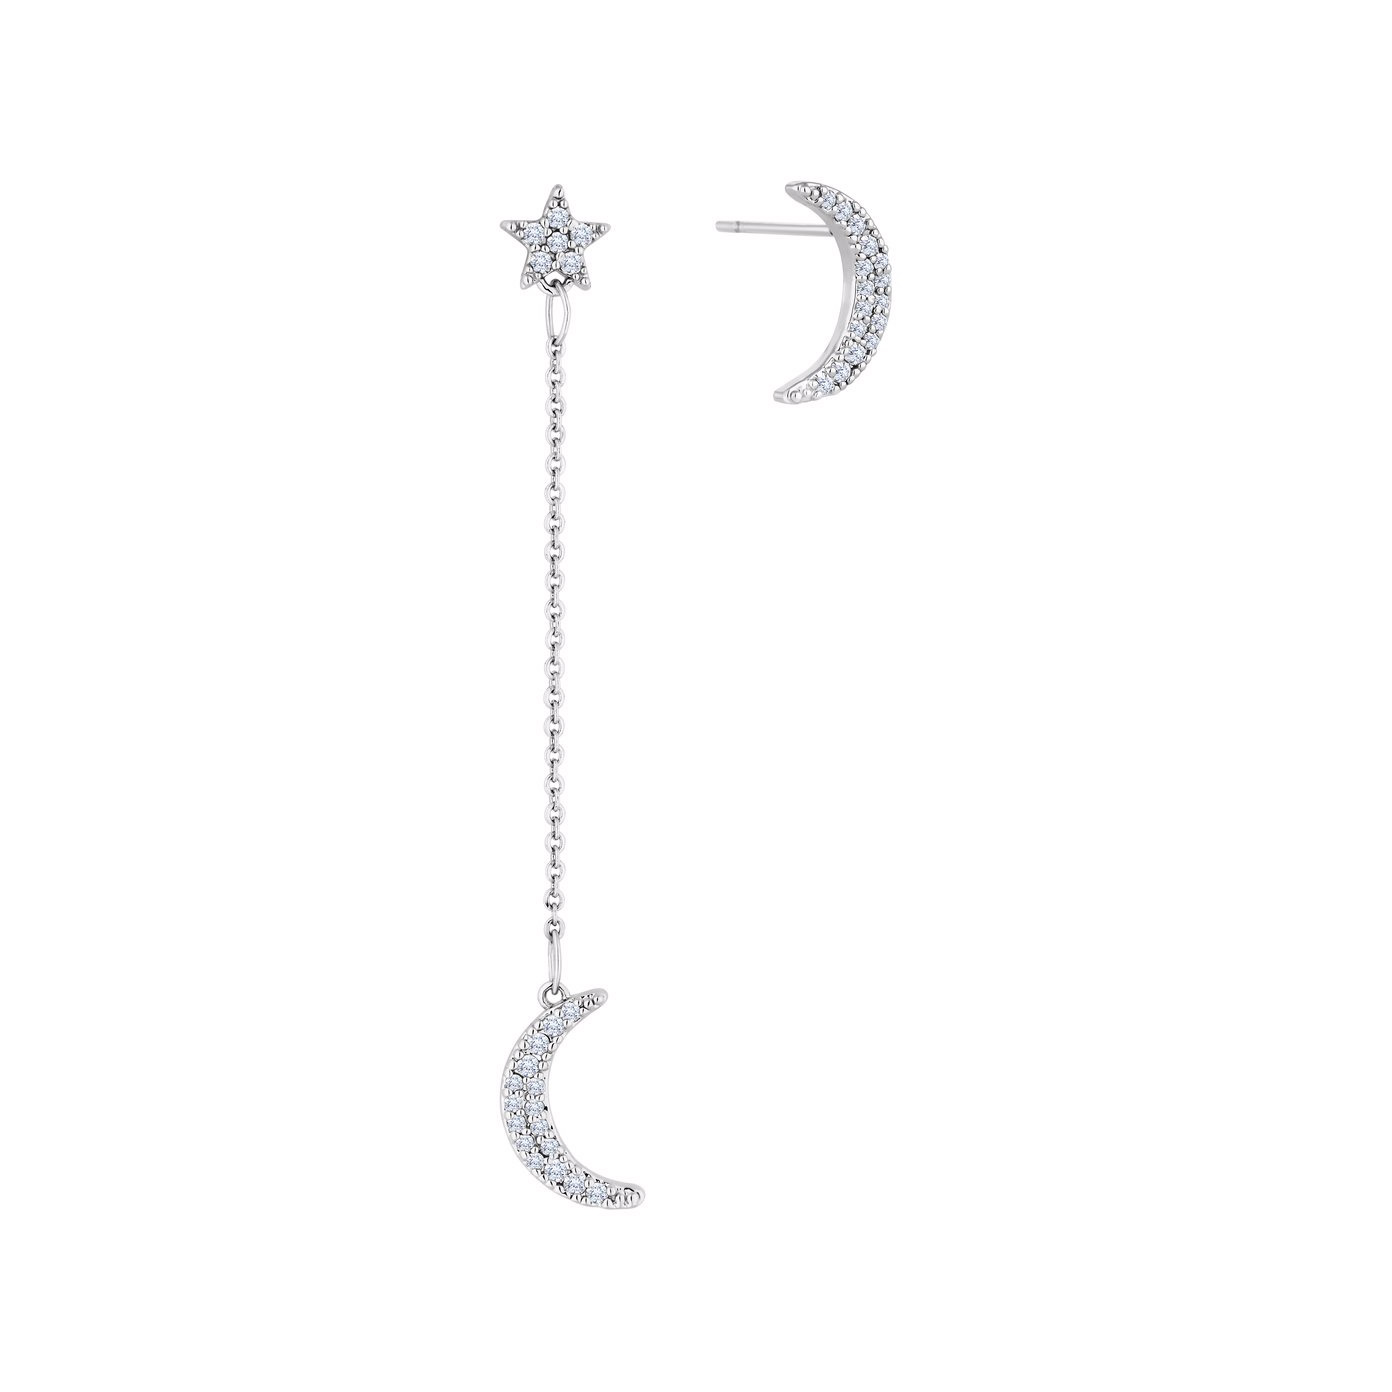 OEM/ODM smykkedesign brugerdefinerede graverede smykker Moon Star øreringe leverandør